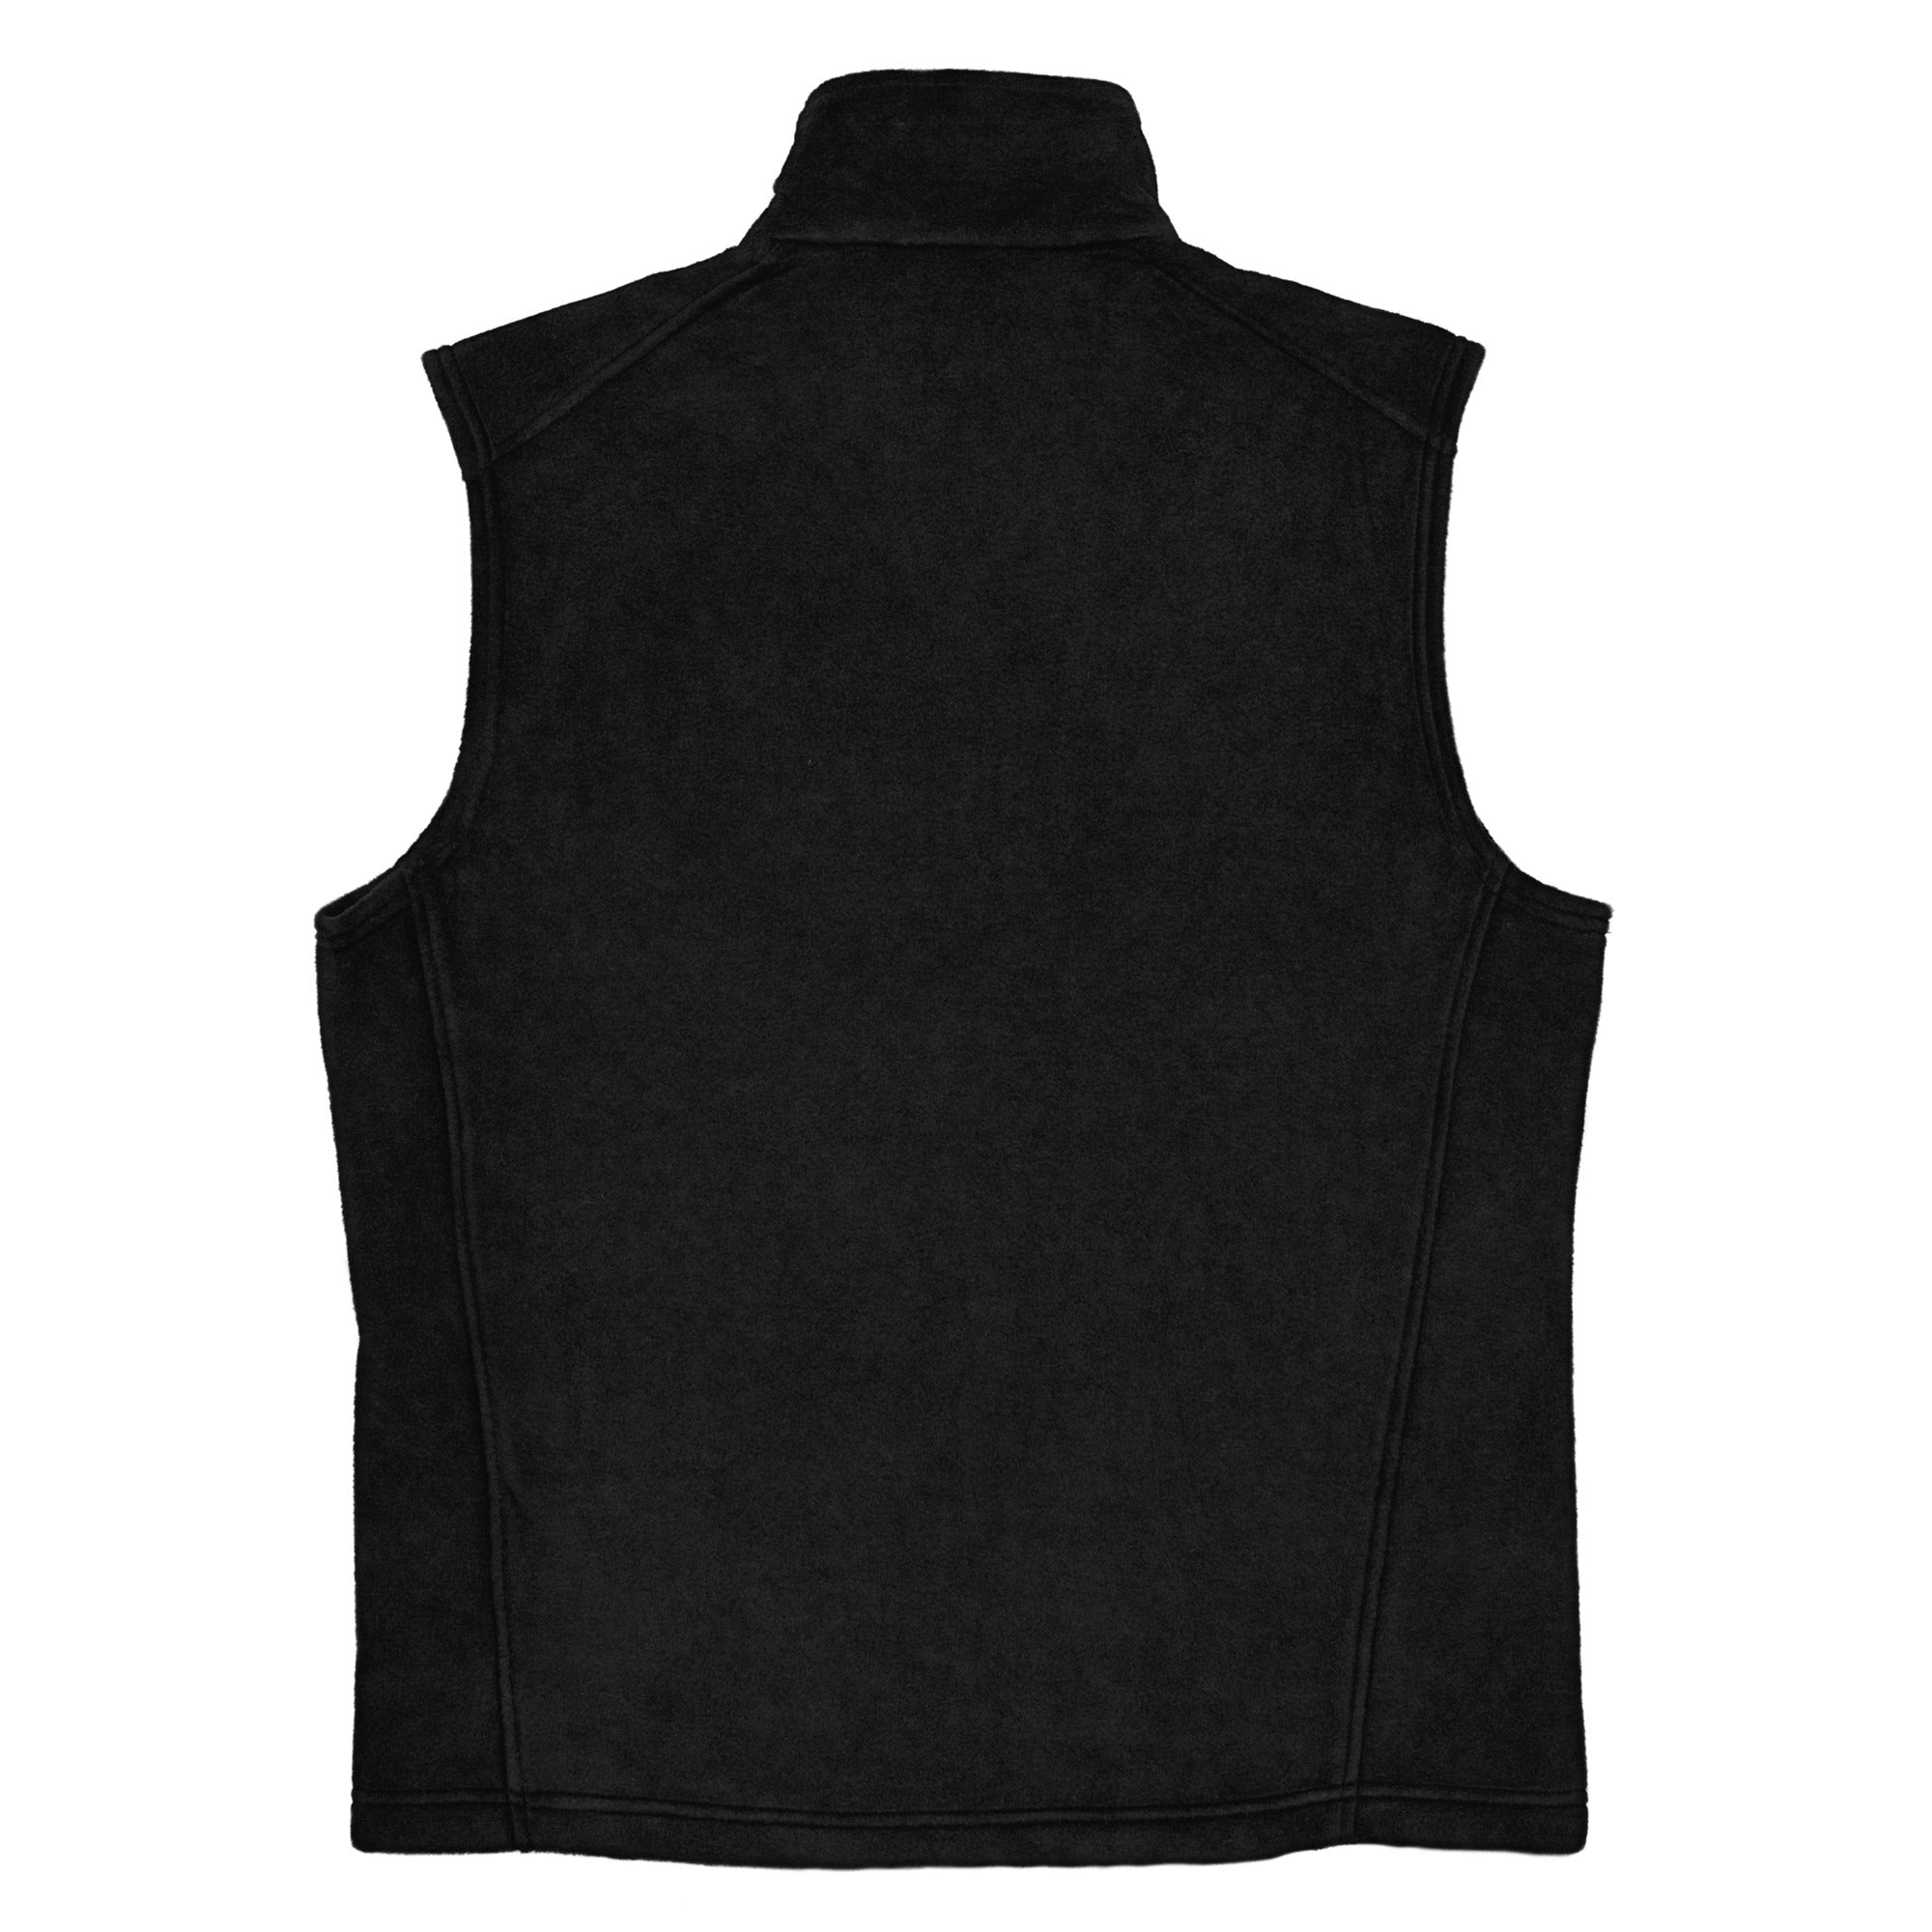 Marshfield Men’s Columbia fleece vest